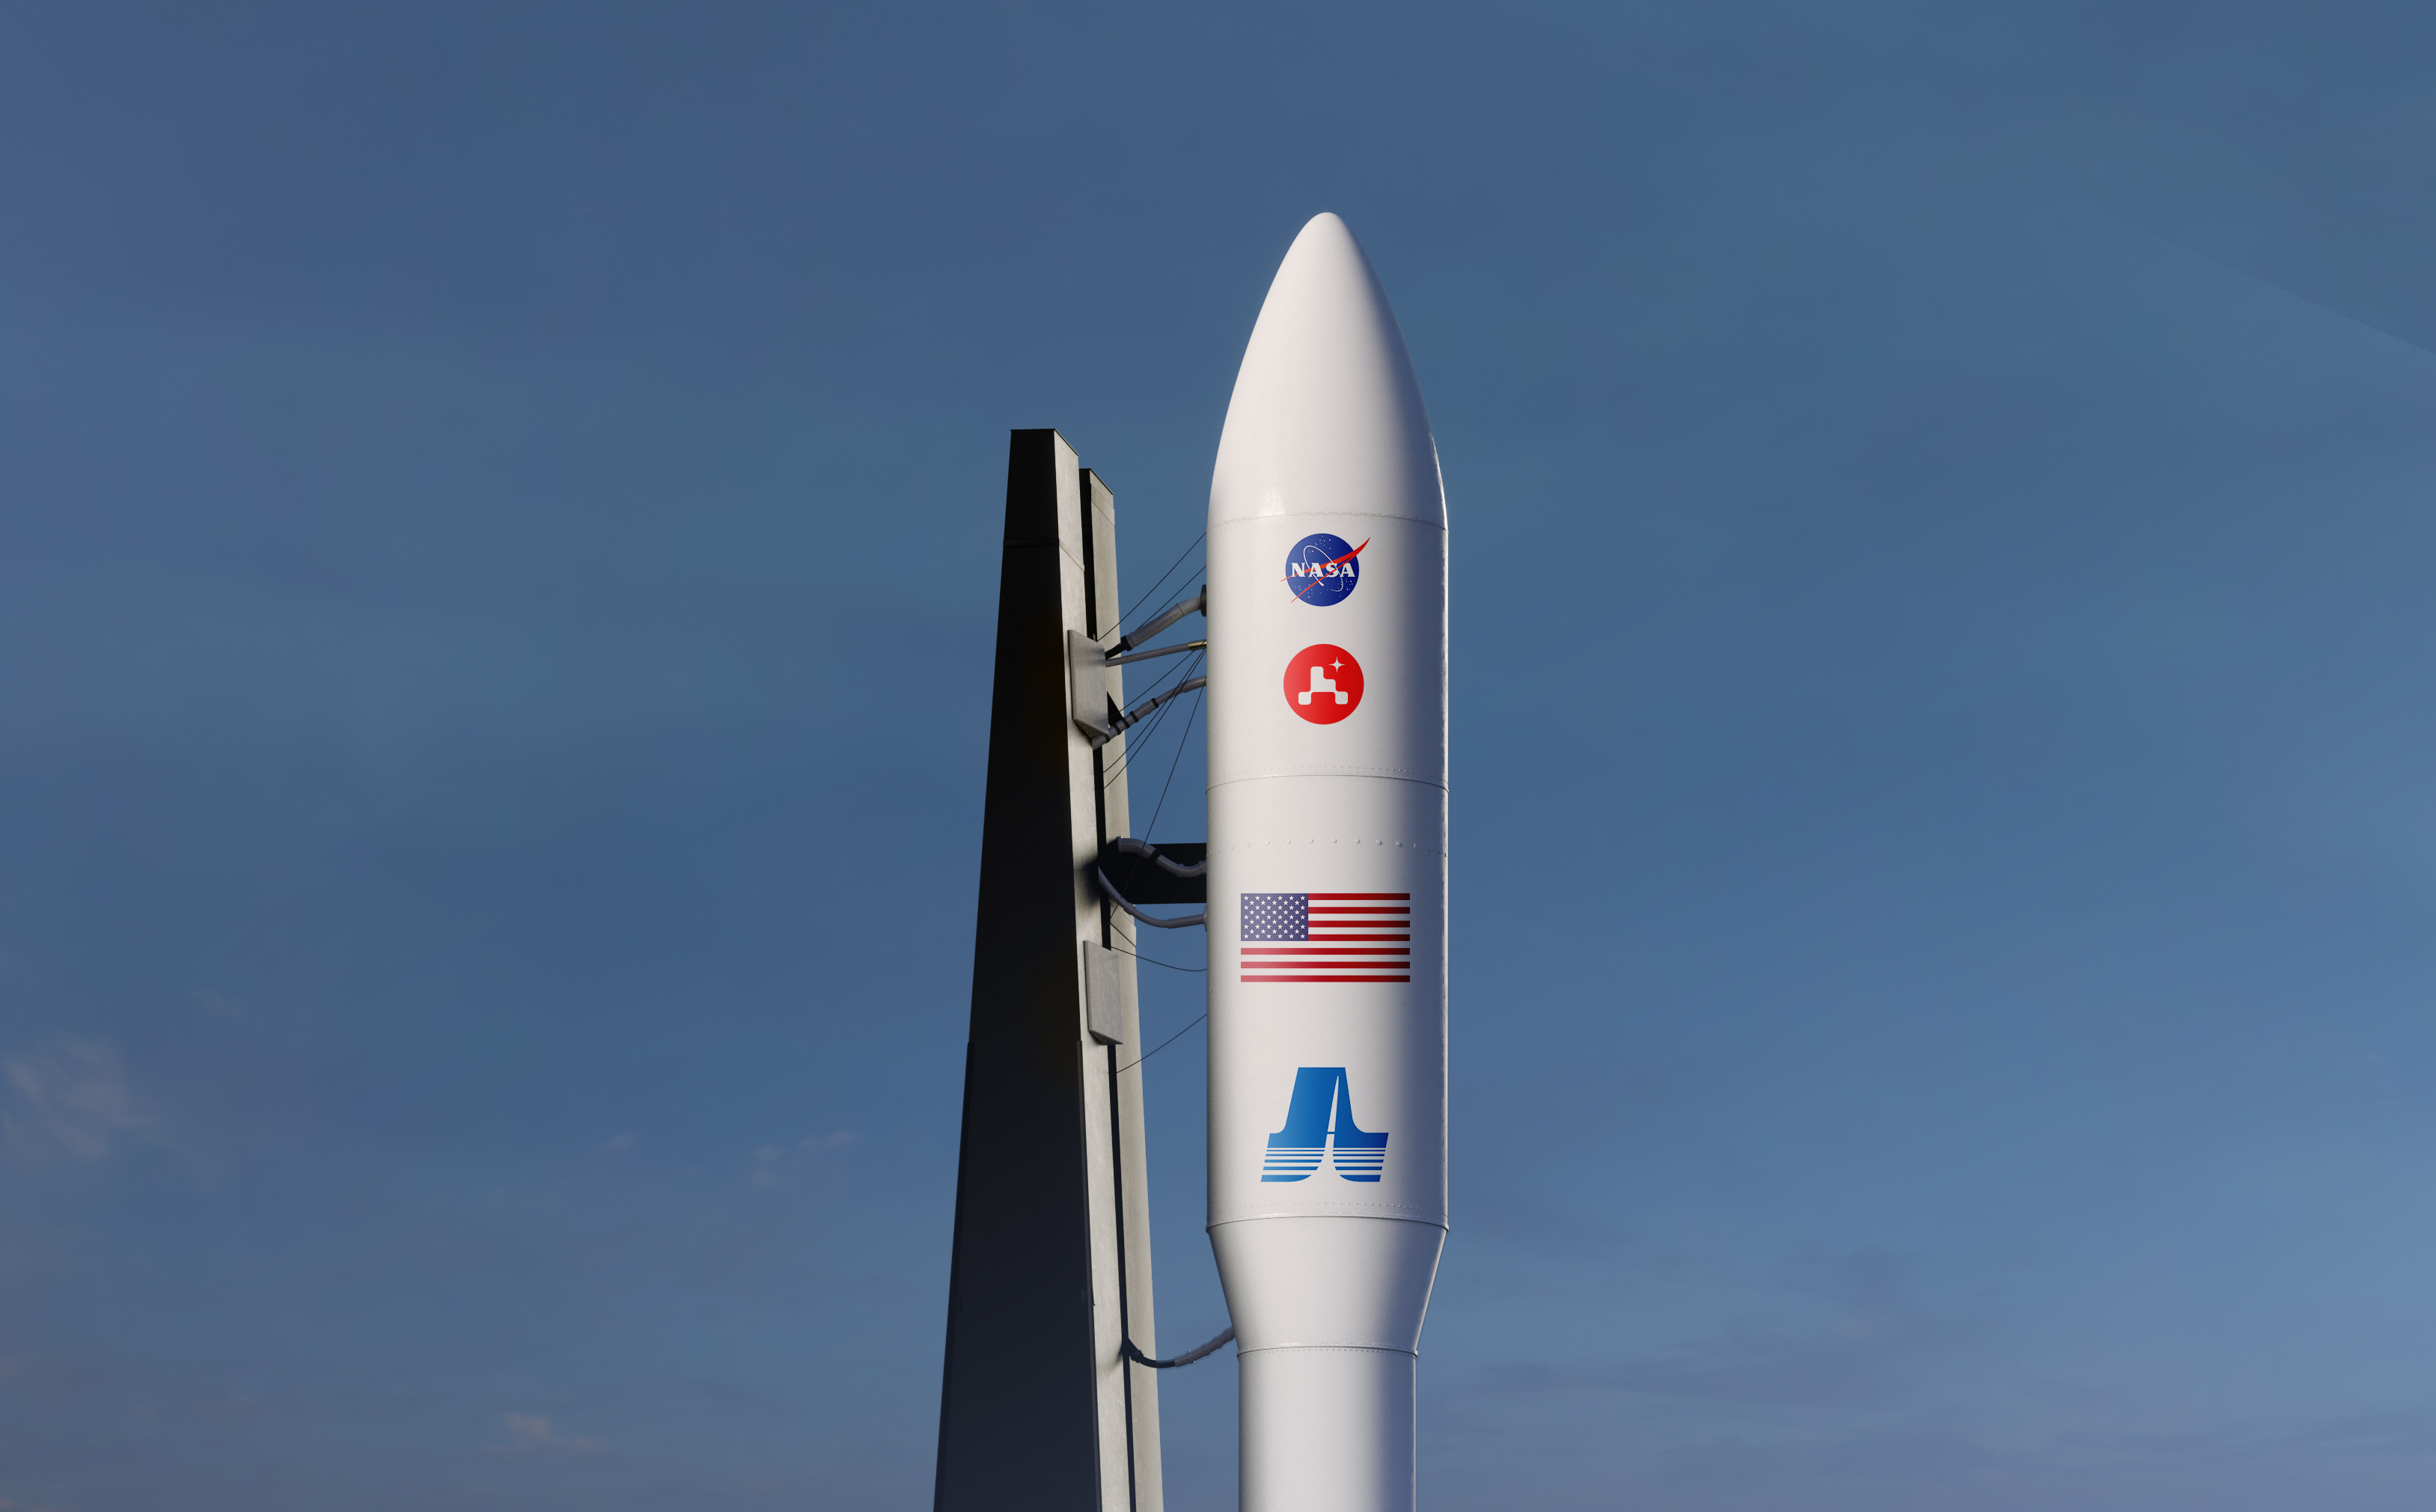 nasa mars2020 logo on 3d rocket